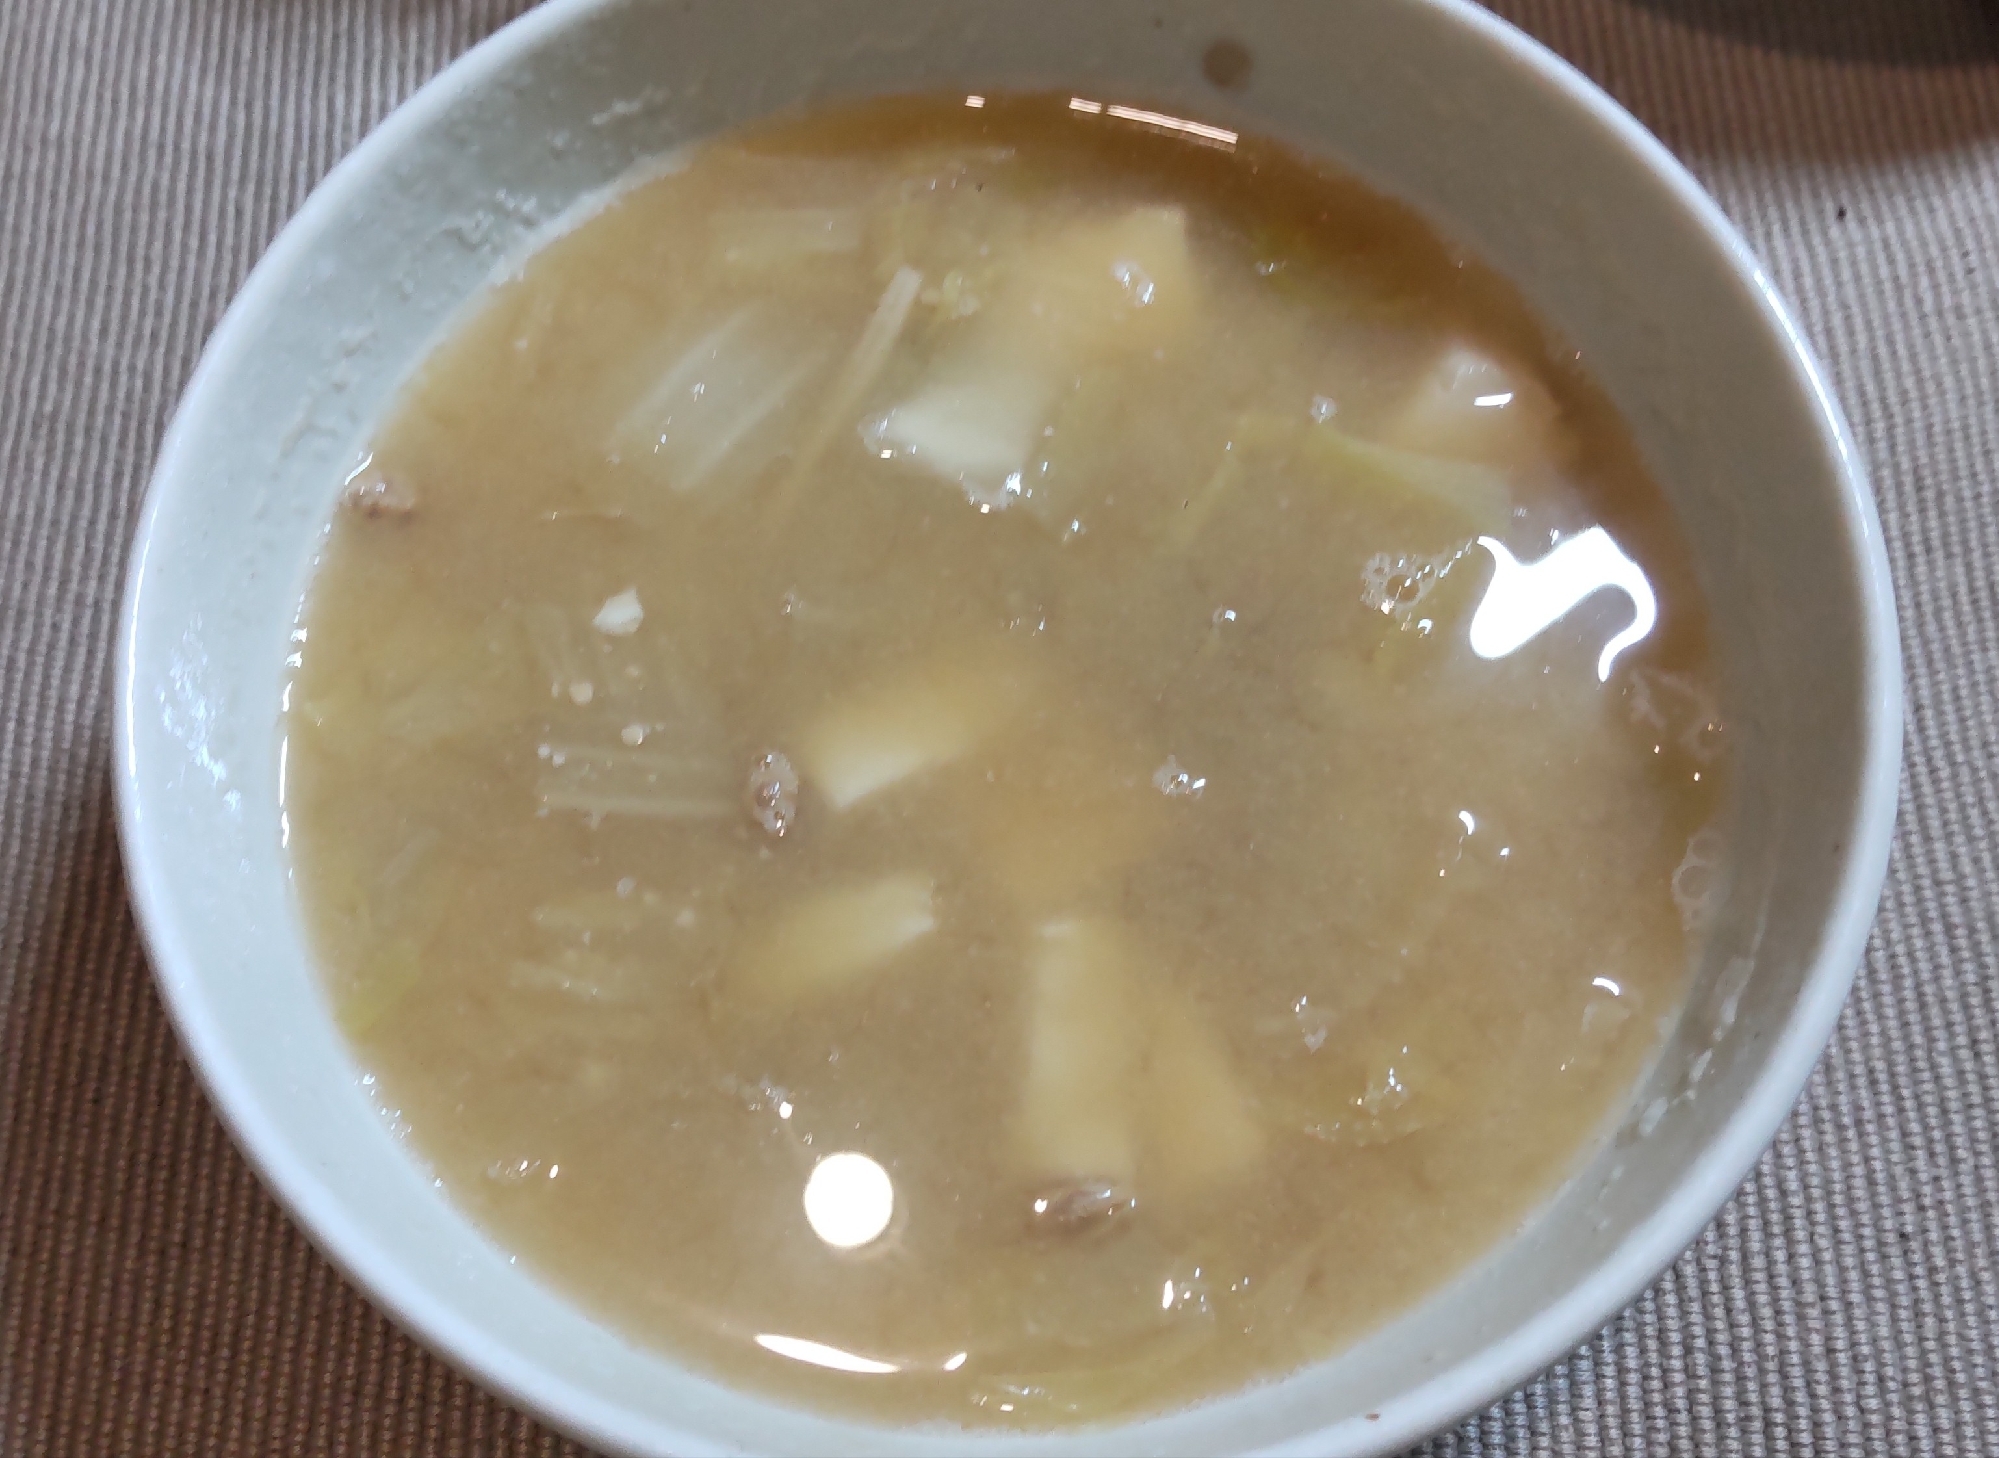 豆腐、納豆、白菜、えのき茸の味噌汁